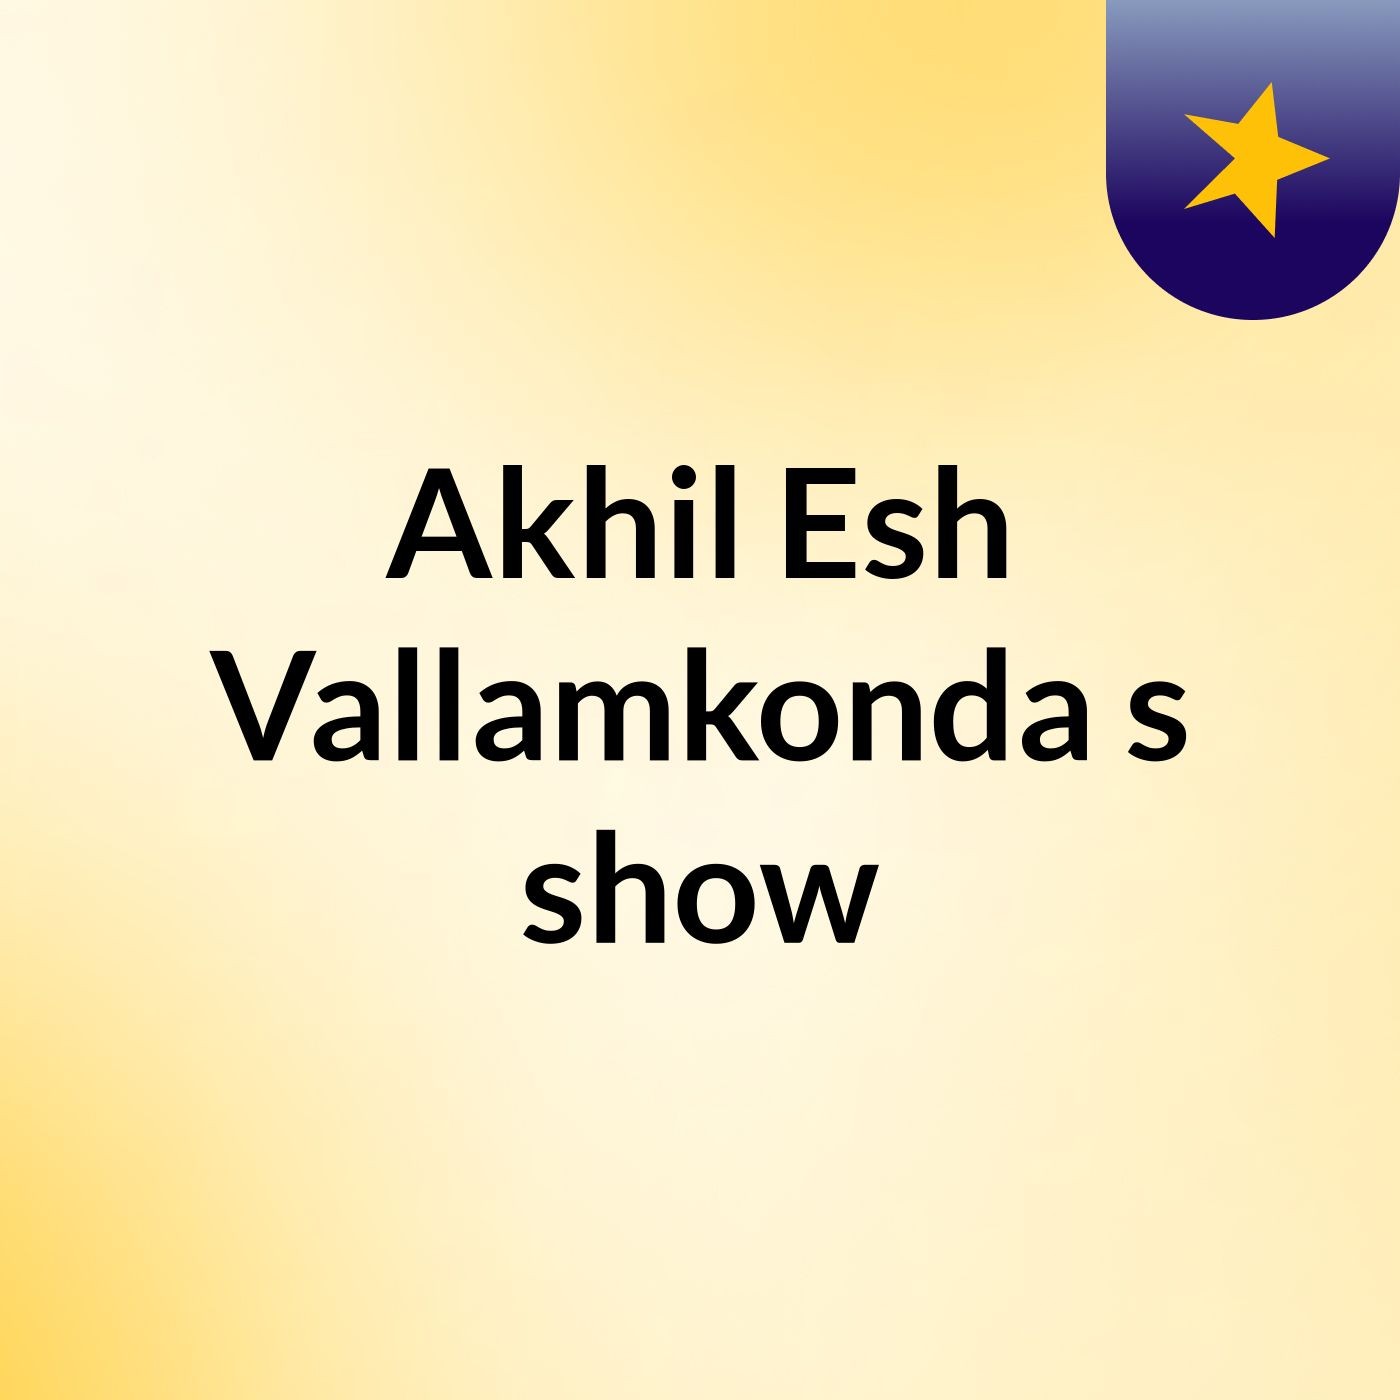 Akhil Esh Vallamkonda's show